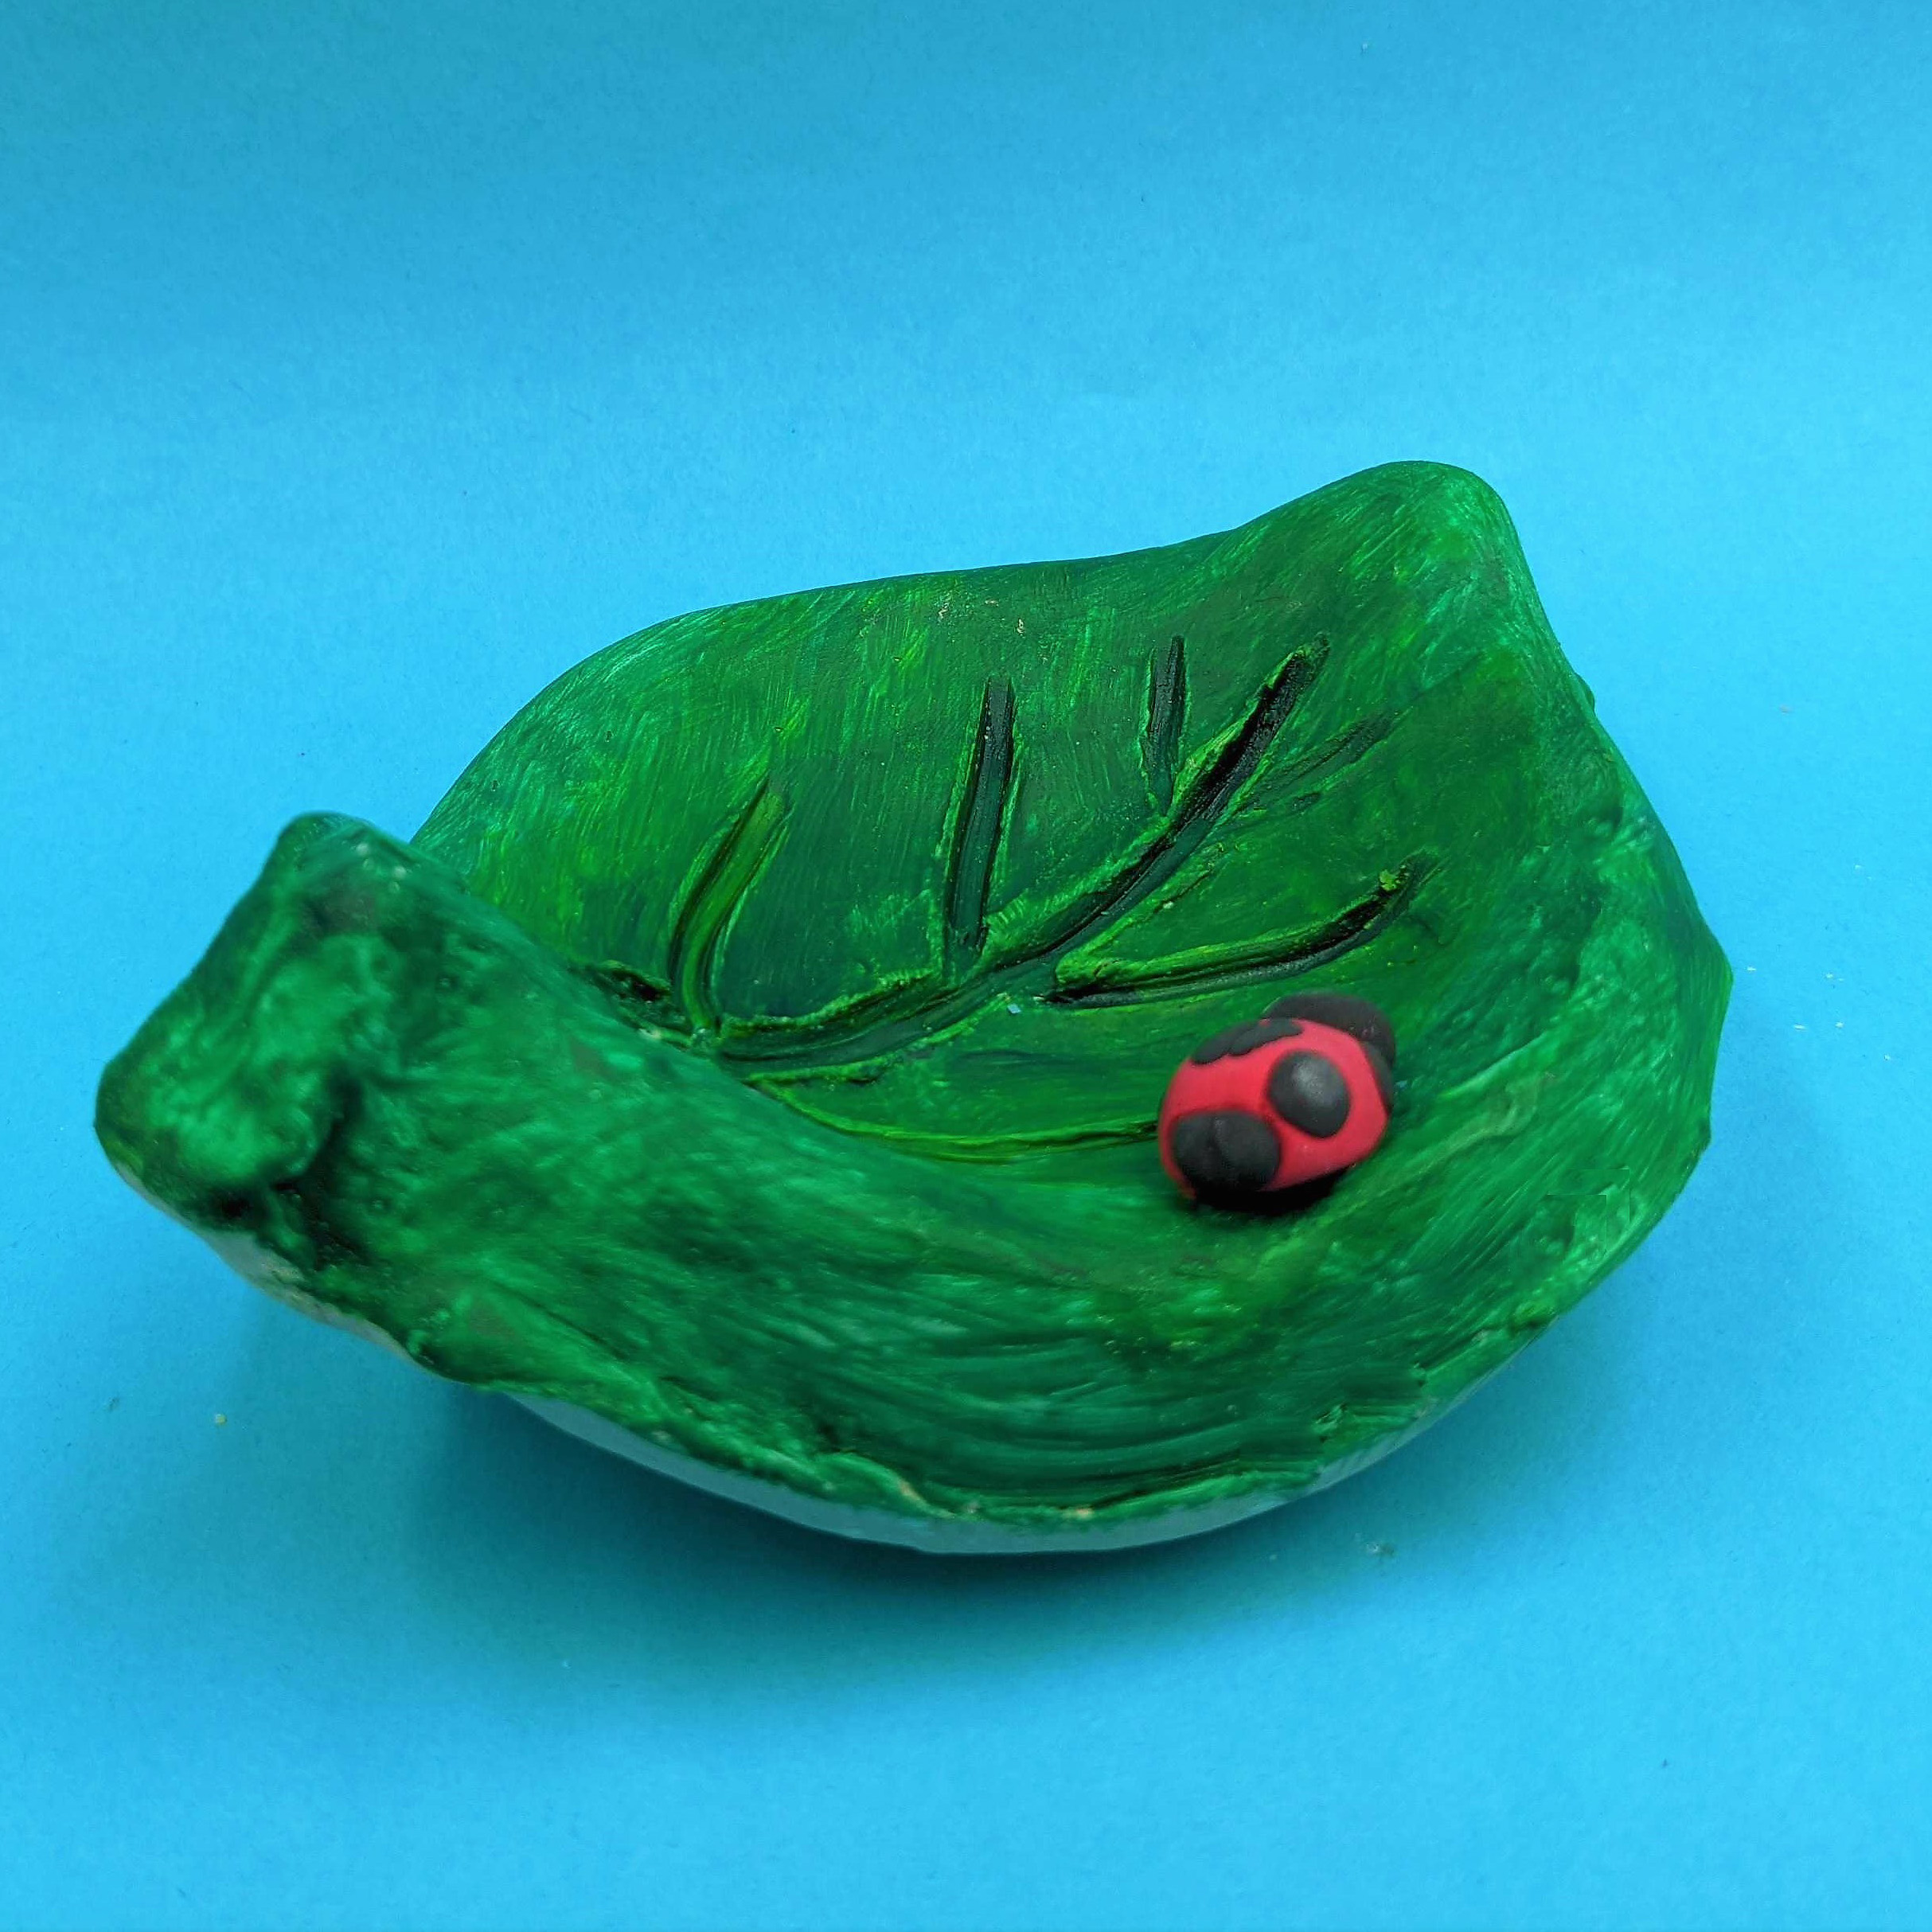 Kidcreate Studio - Bloomfield, Leaf bowl Art Project